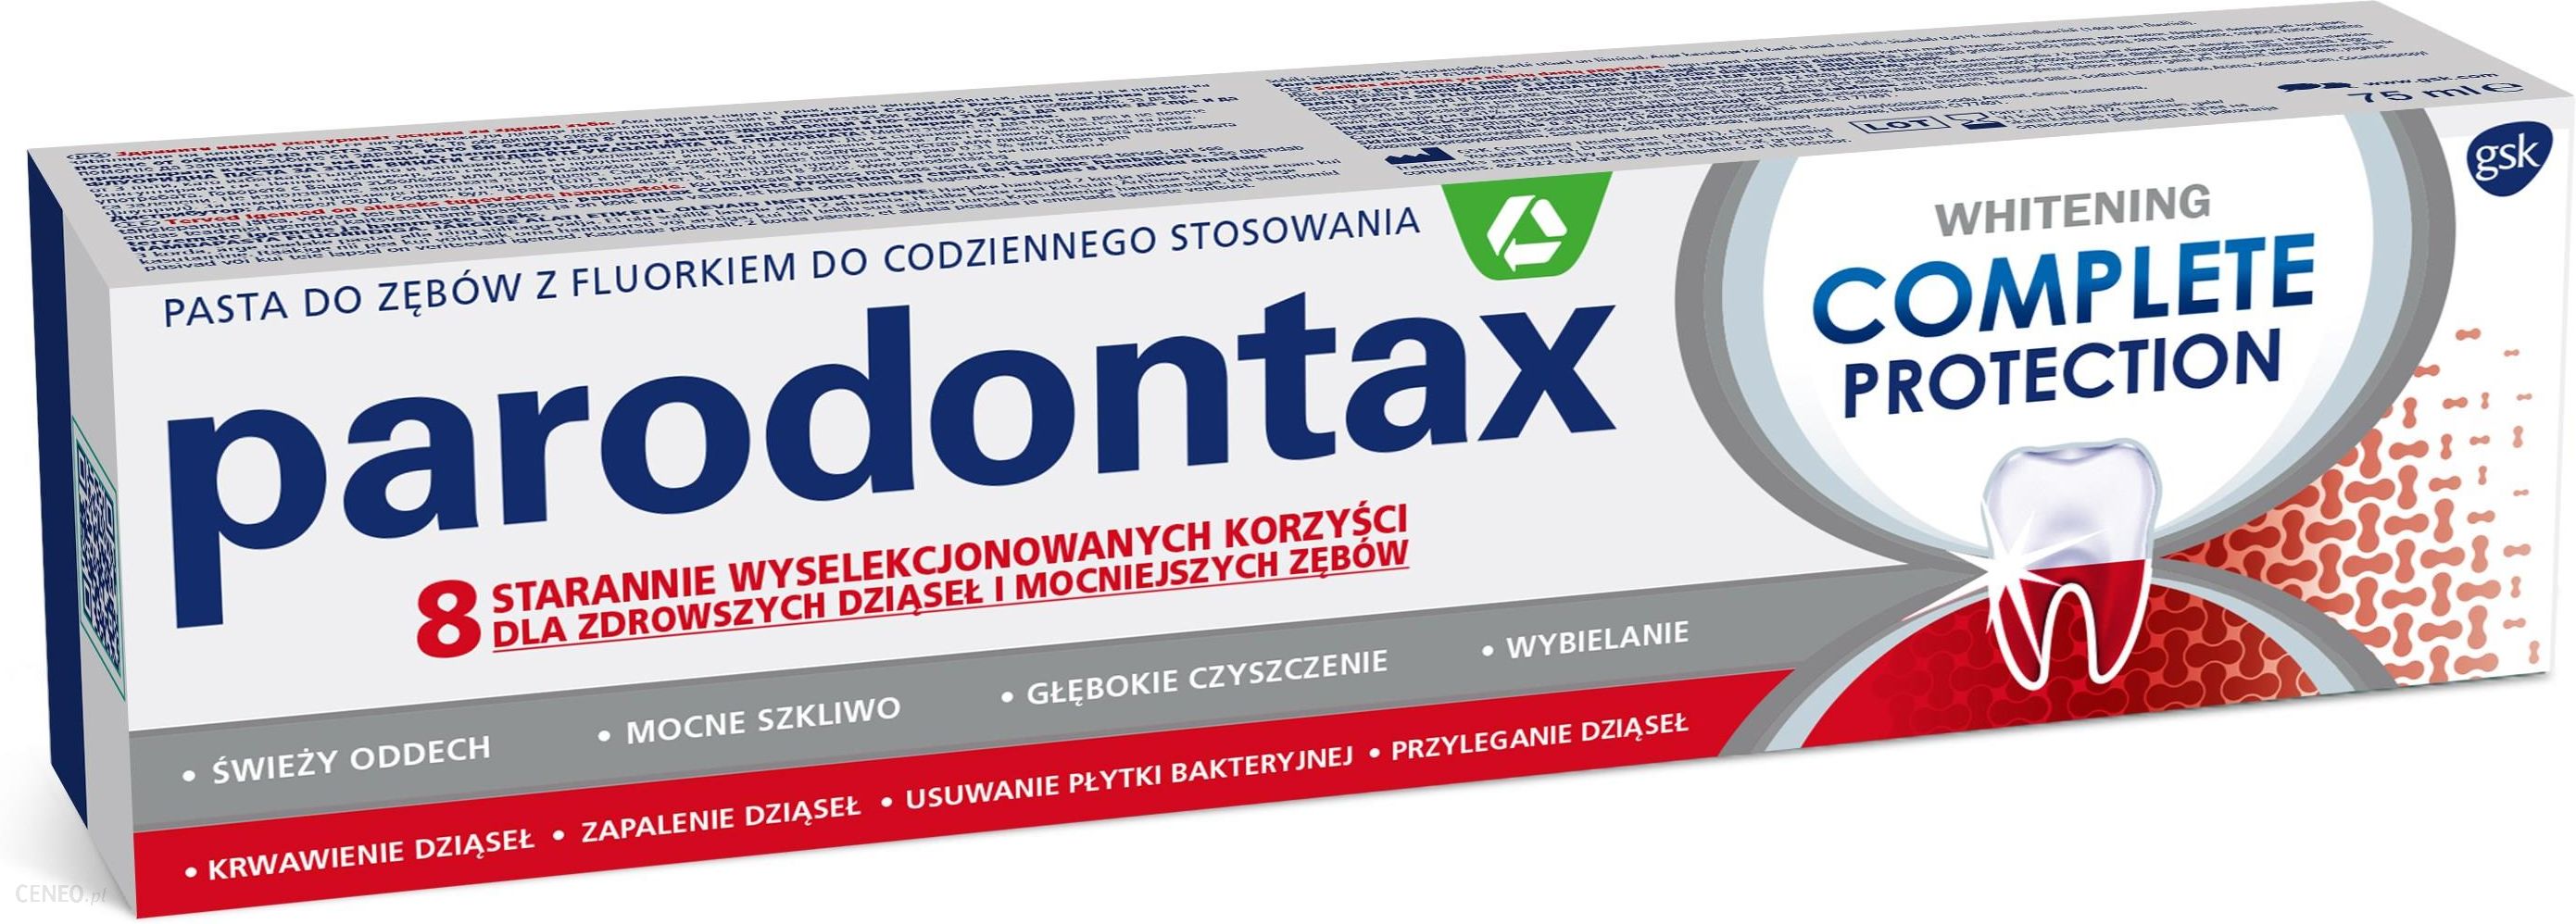  Parodontax Complete Protection Whitening Pasta do zębów przeciw krwawieniu dziąseł 75ml